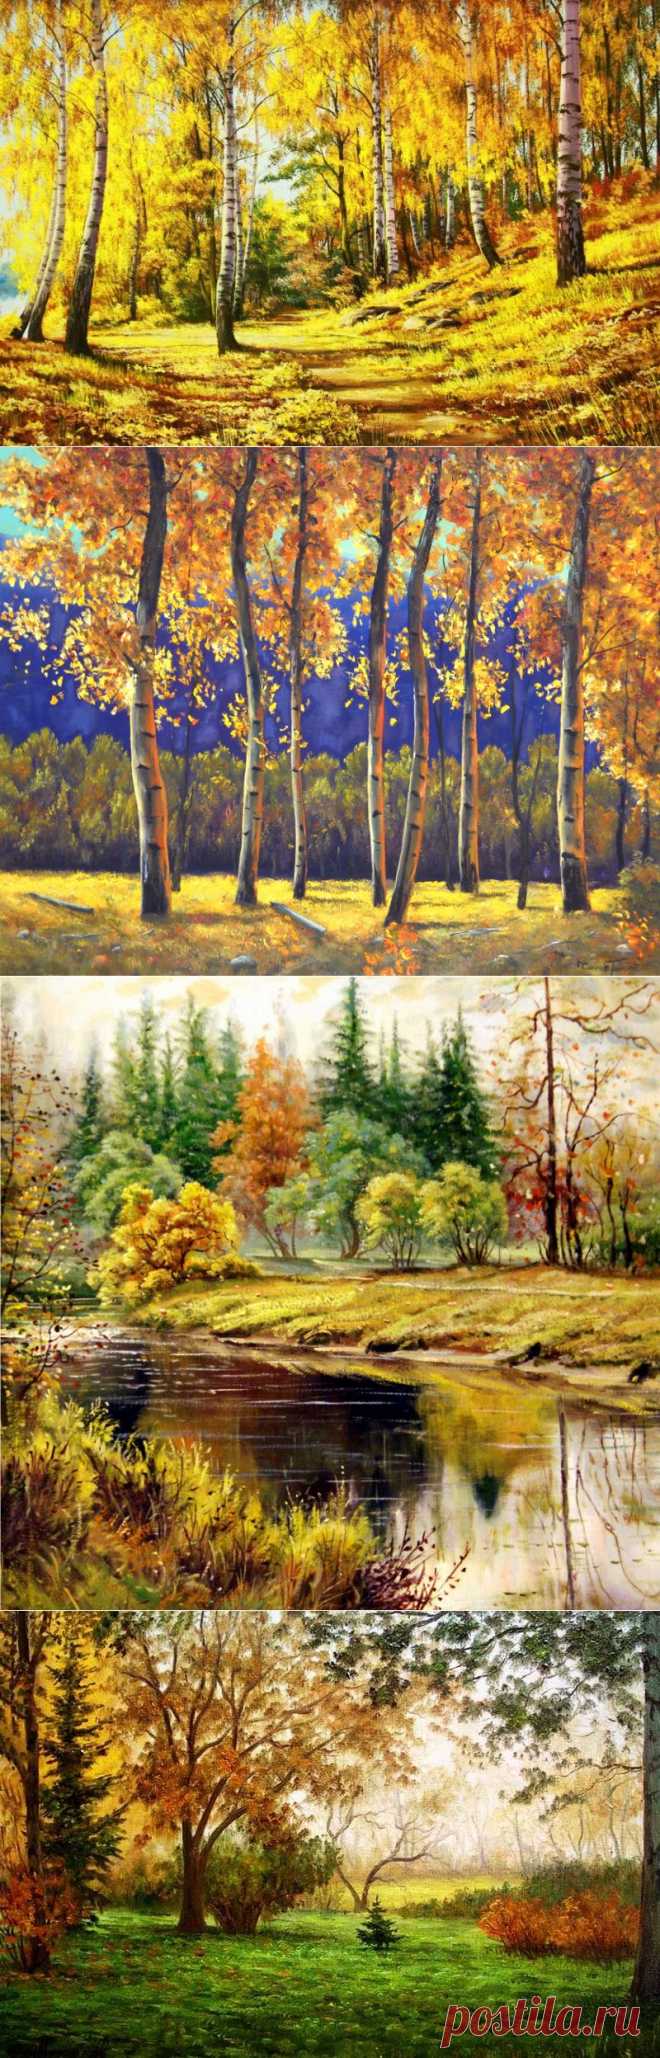 В багрец и золото одетые леса... Осенний пейзаж в живописи.